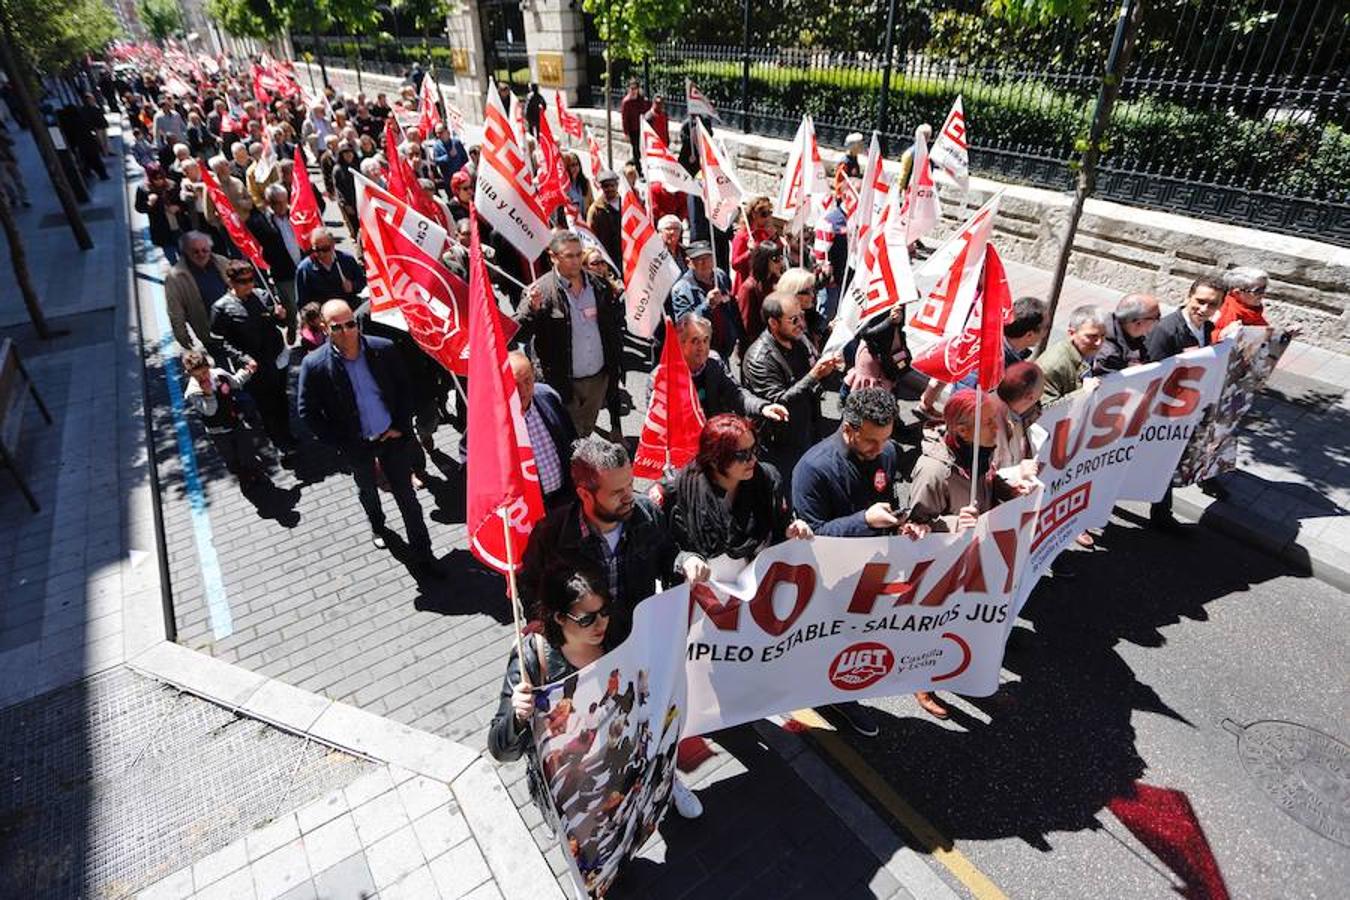 Los líderes de UGT y CCOO en Castilla y León, Faustino Temprano y Ángel Hernández, se han desmarcado de la petición de referéndum en León por parte de sus organizaciones al alegar que este tema "no está en la agenda sindical"